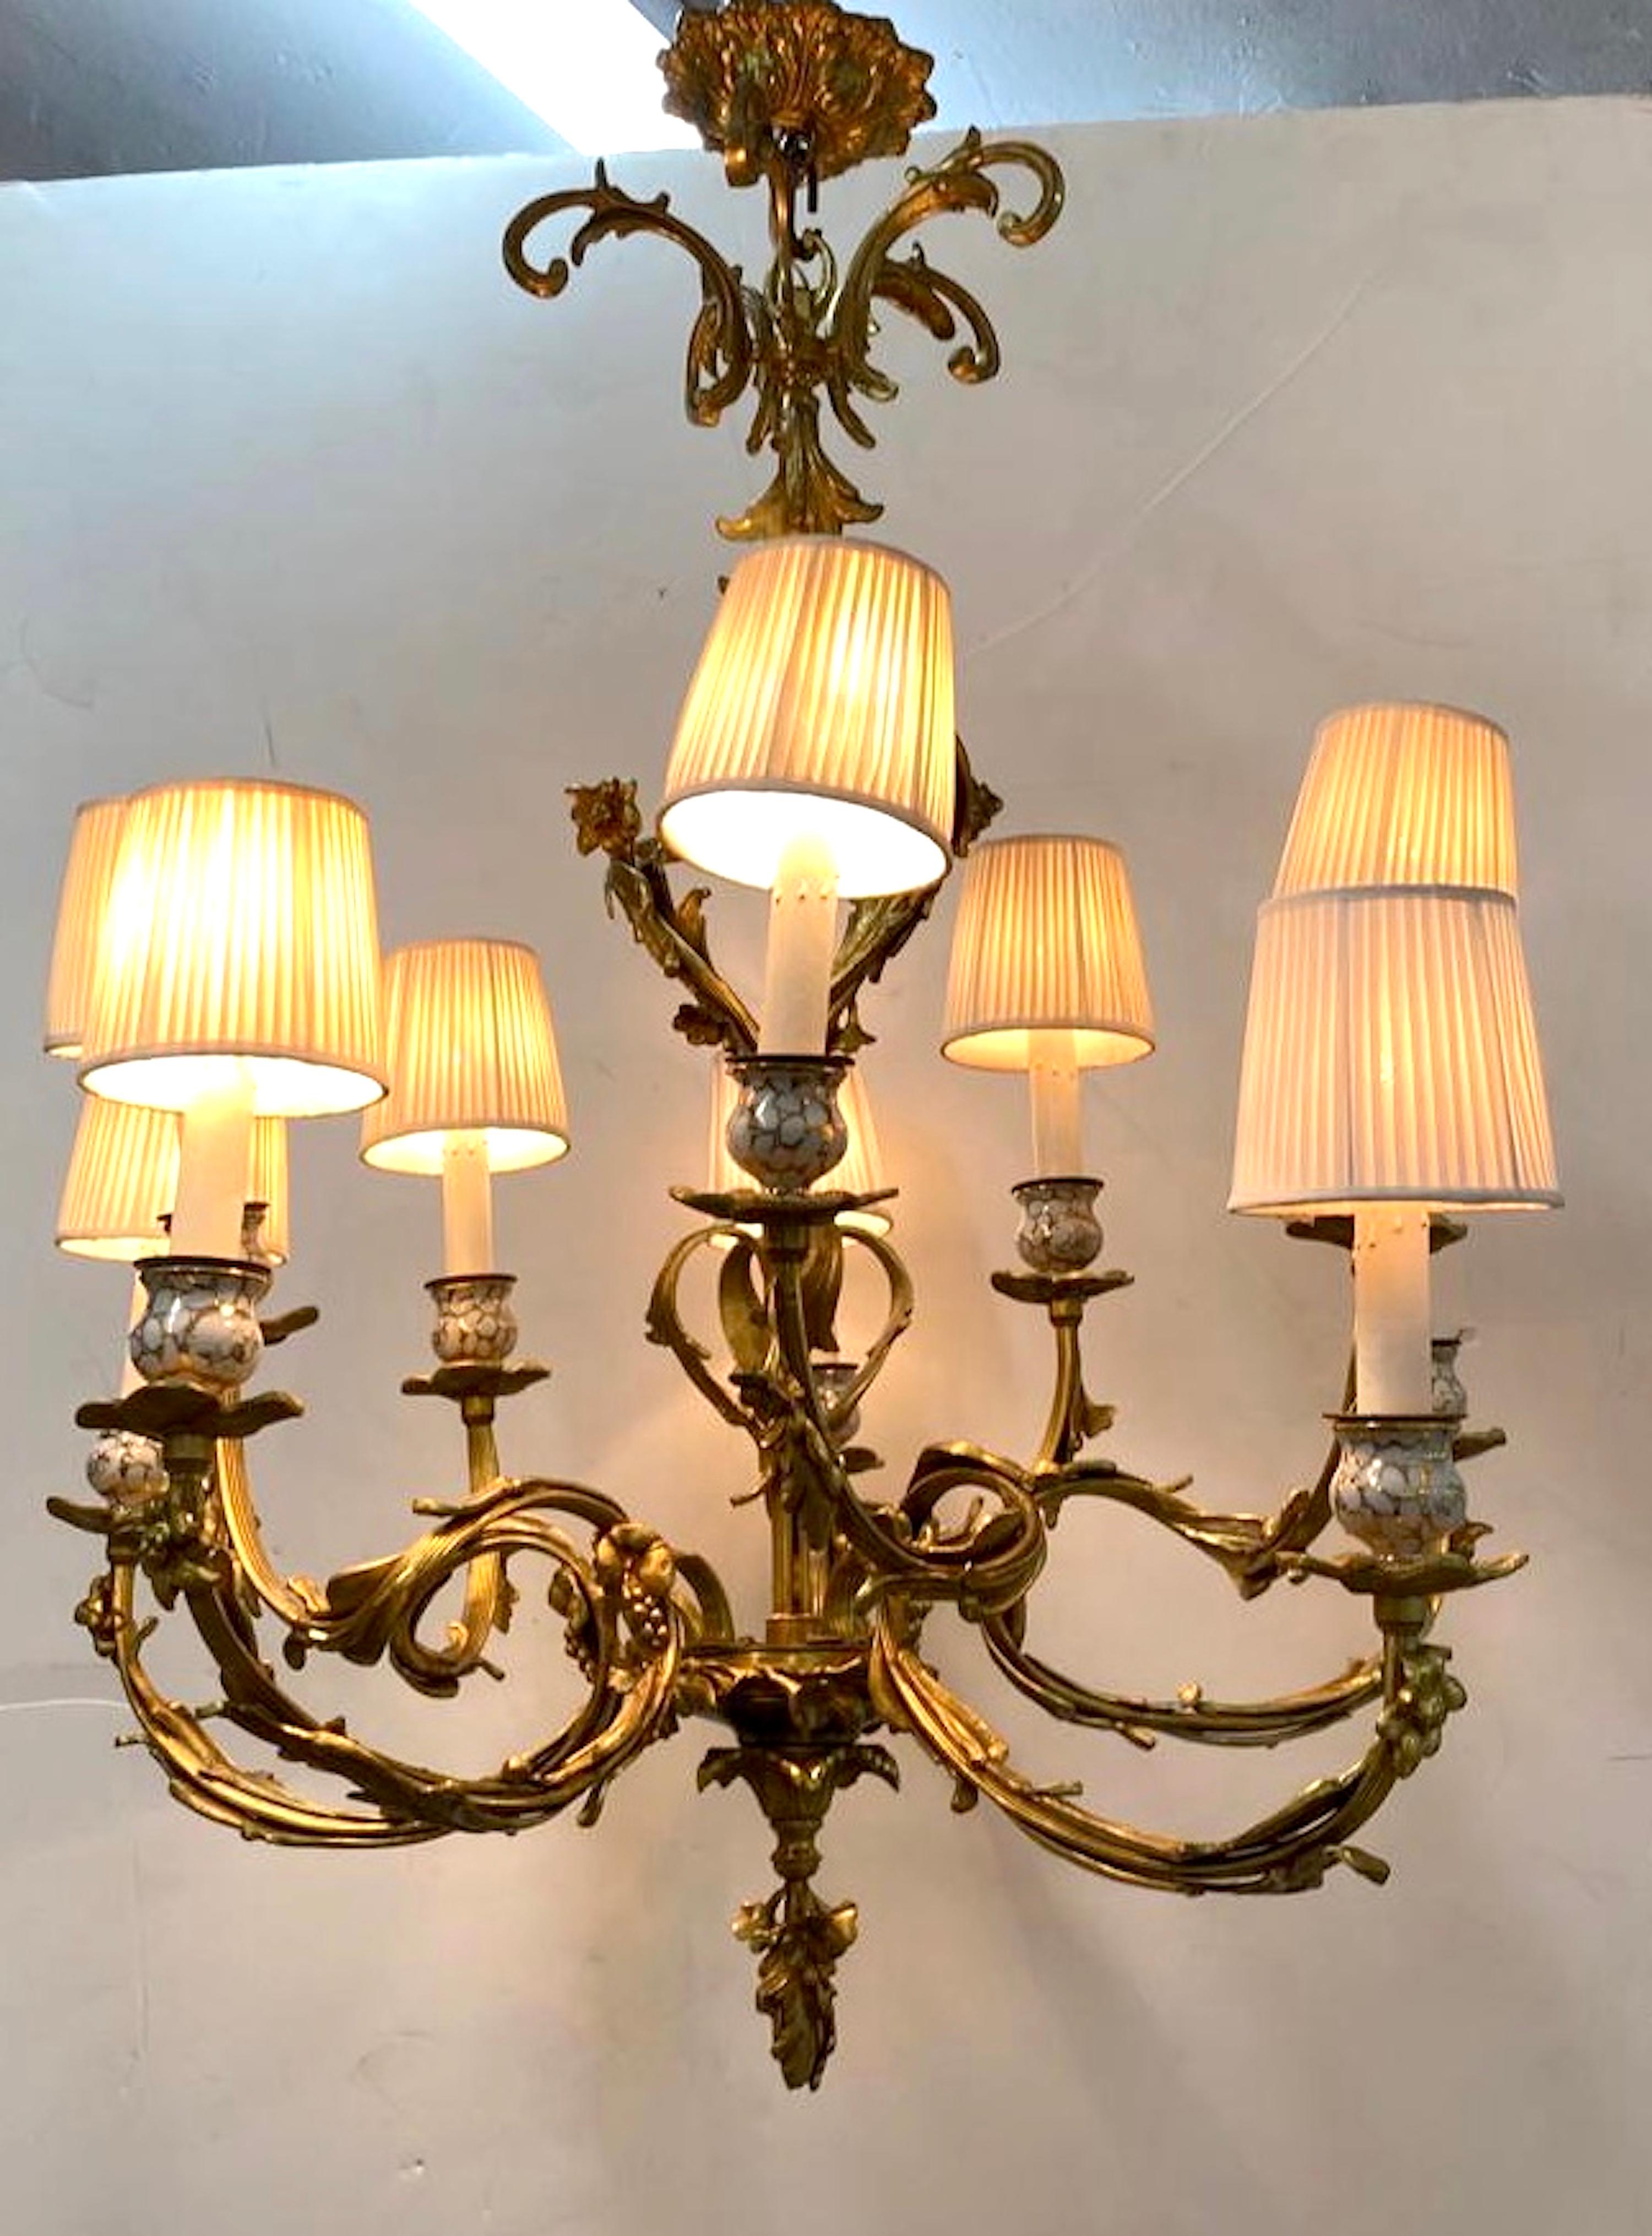 Un très beau lustre français en bronze doré de style rococo avec dix lumières. Il y a cinq séries de bras doubles. Chaque ensemble est composé d'un bras supérieur et d'un bras inférieur se terminant par une bobeche en bronze doré et un